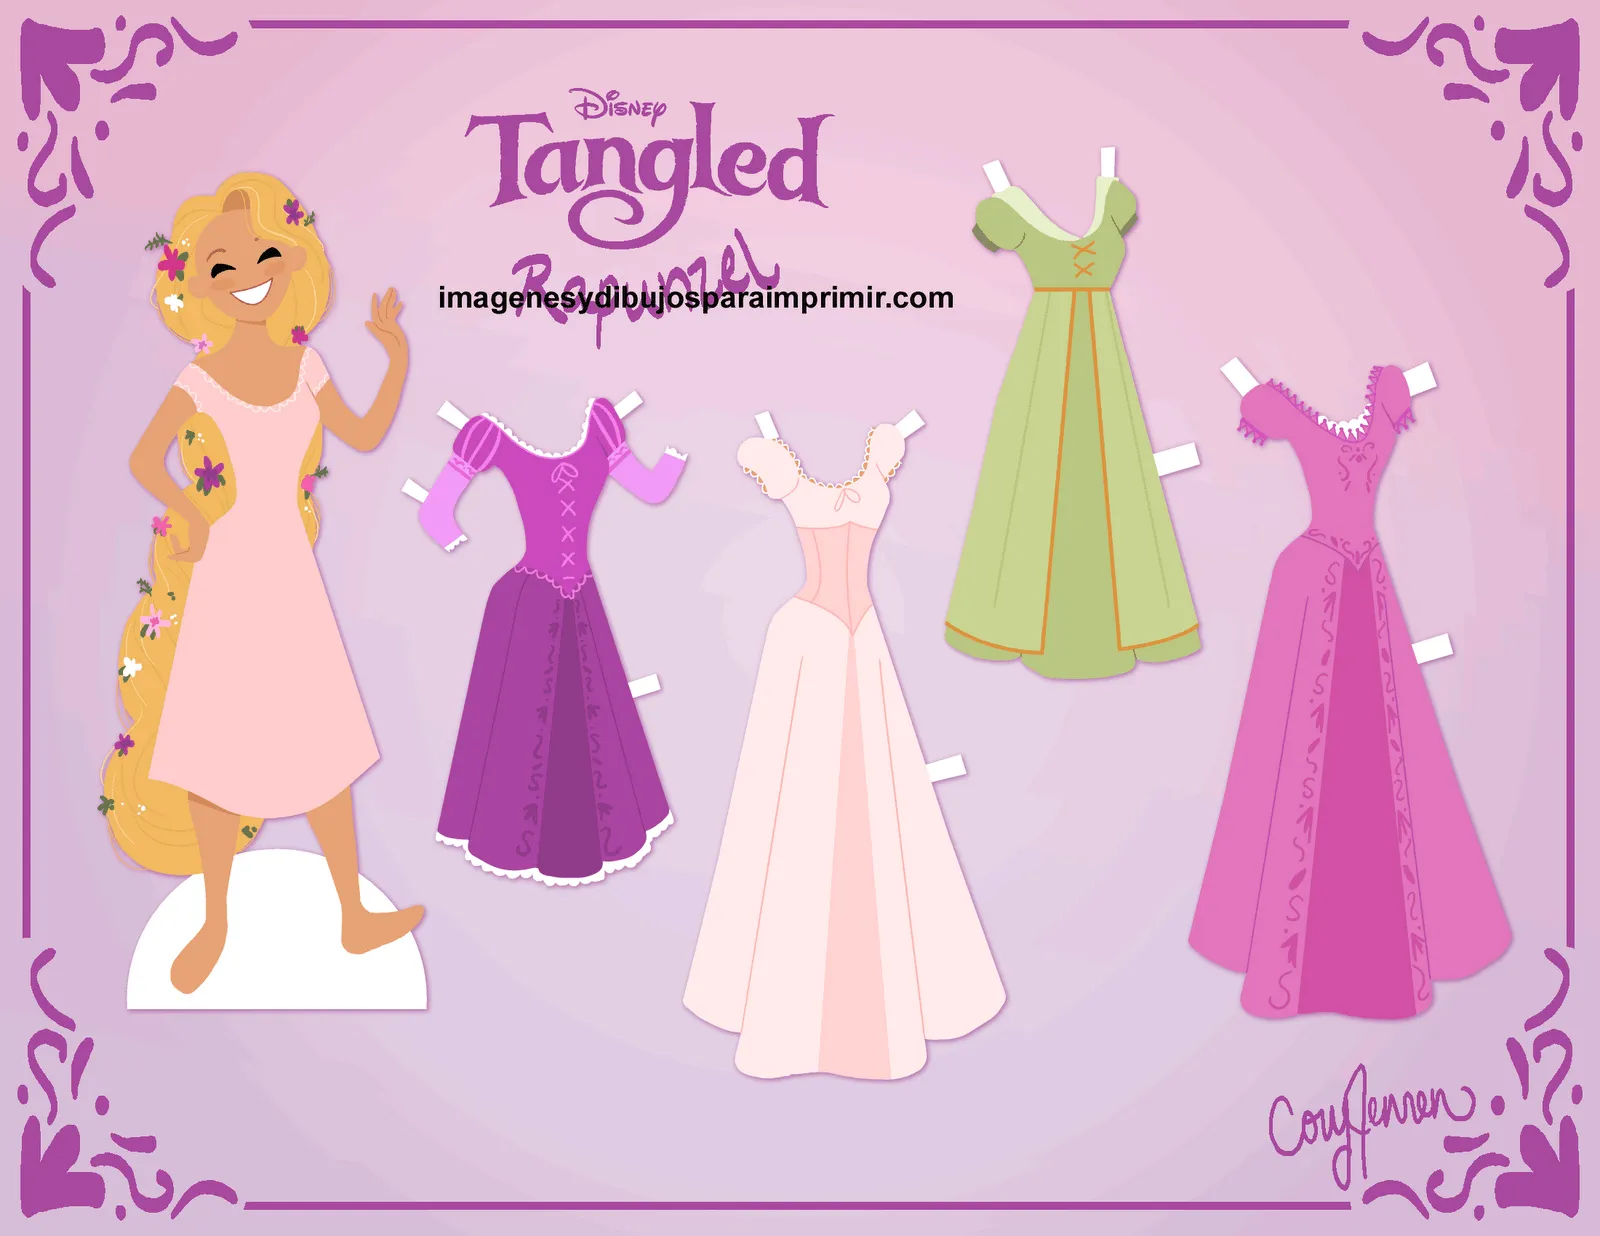 Recortar imagen de Rapunzel de Enredados - Imagenes y dibujos para ...